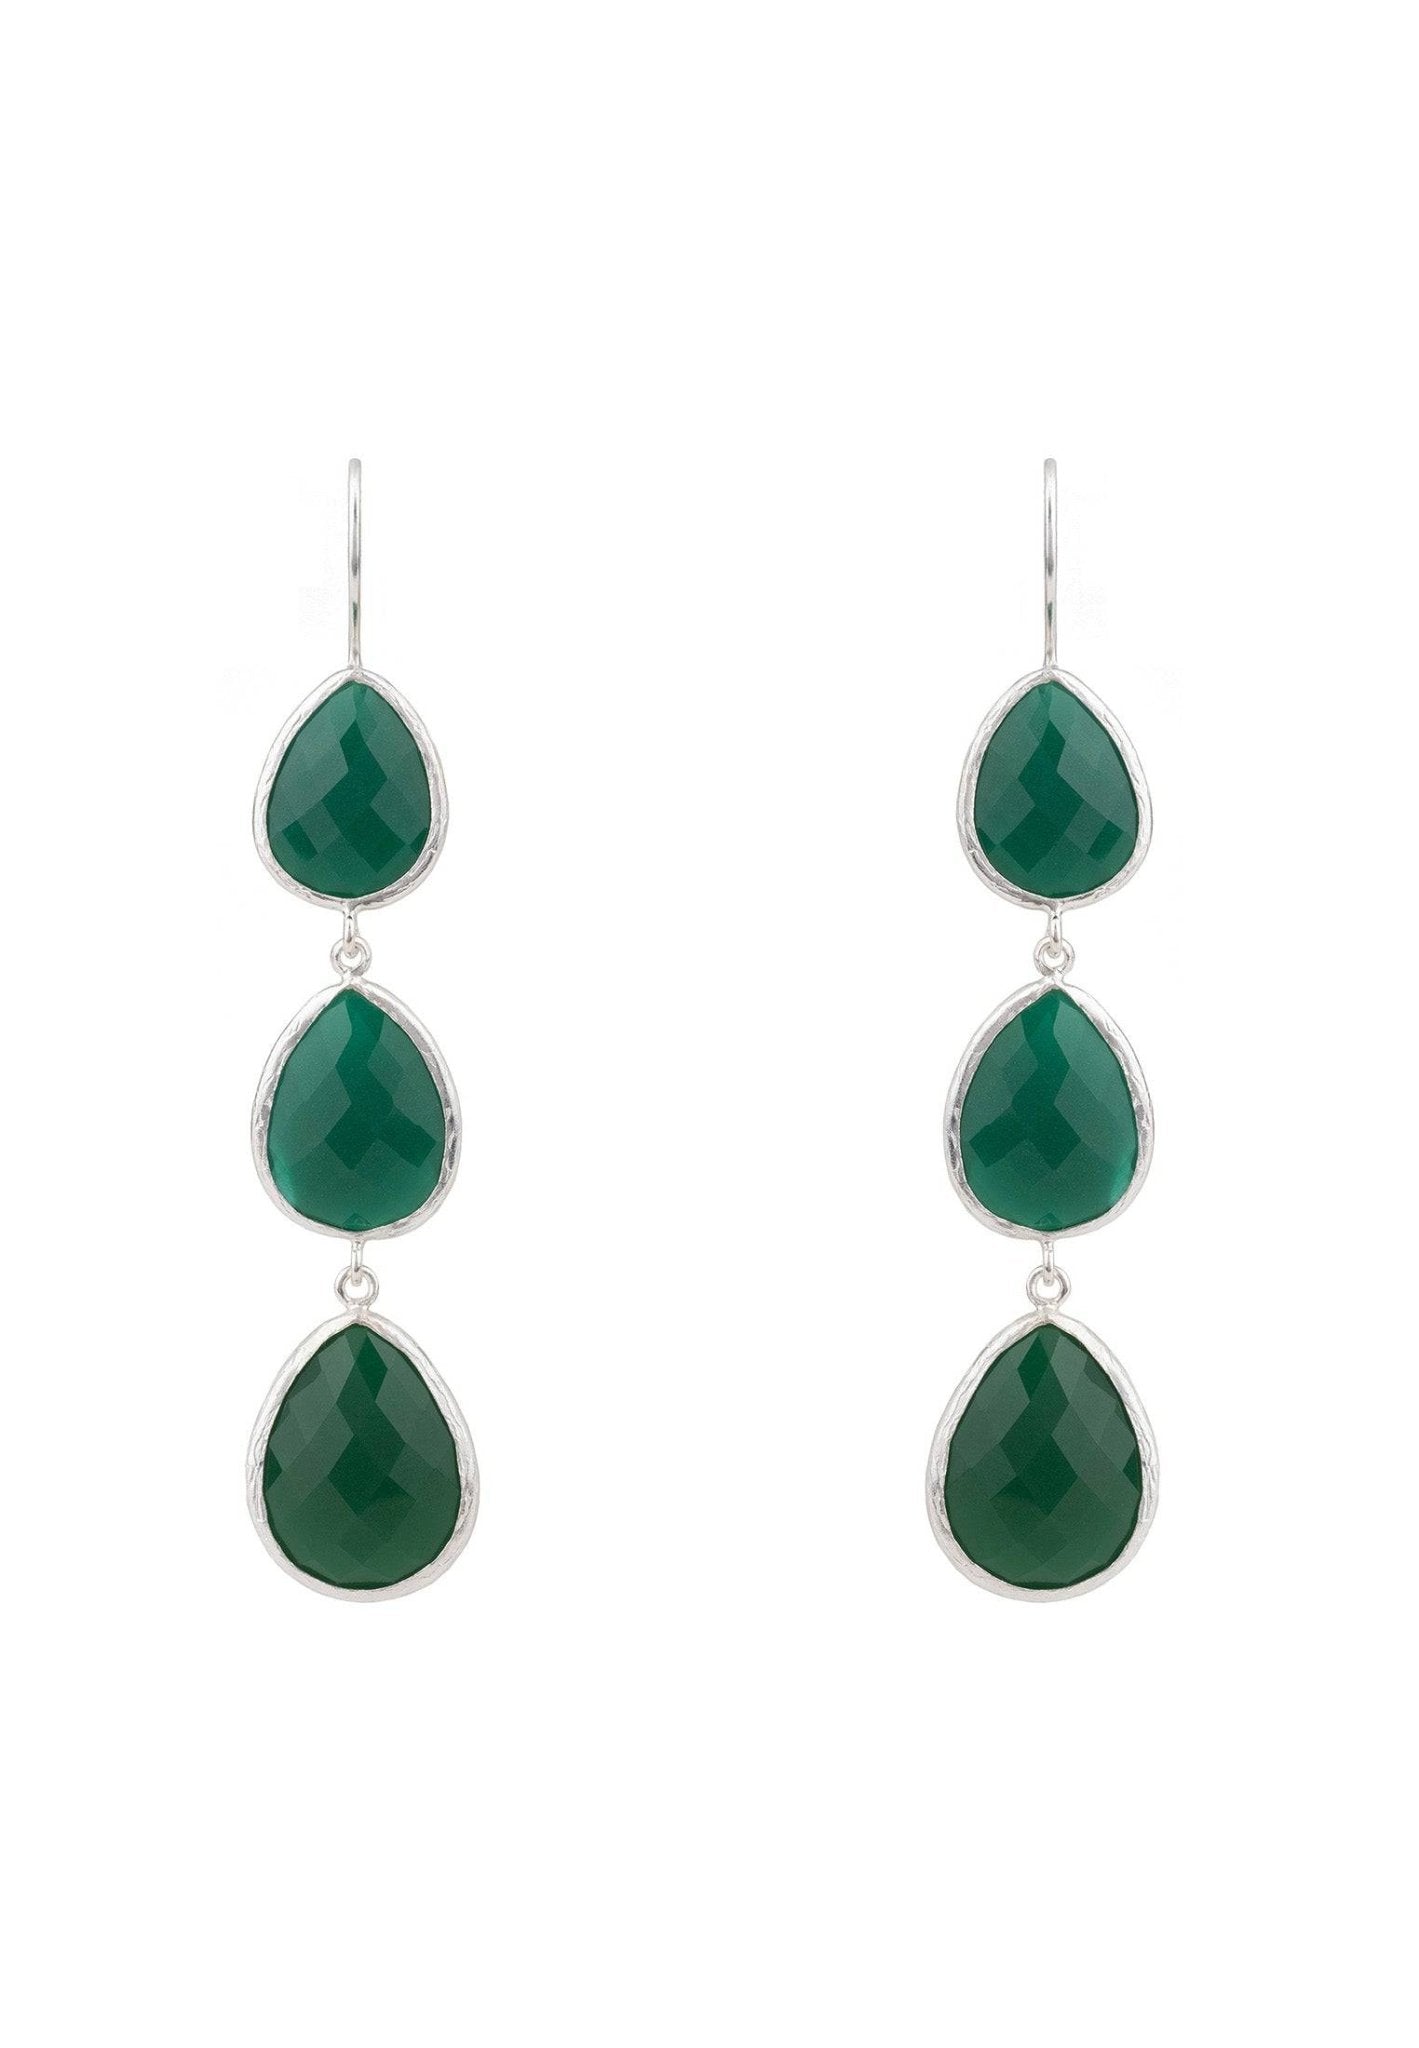 Triple Drop Earring Silver Green Onyx - LATELITA Earrings